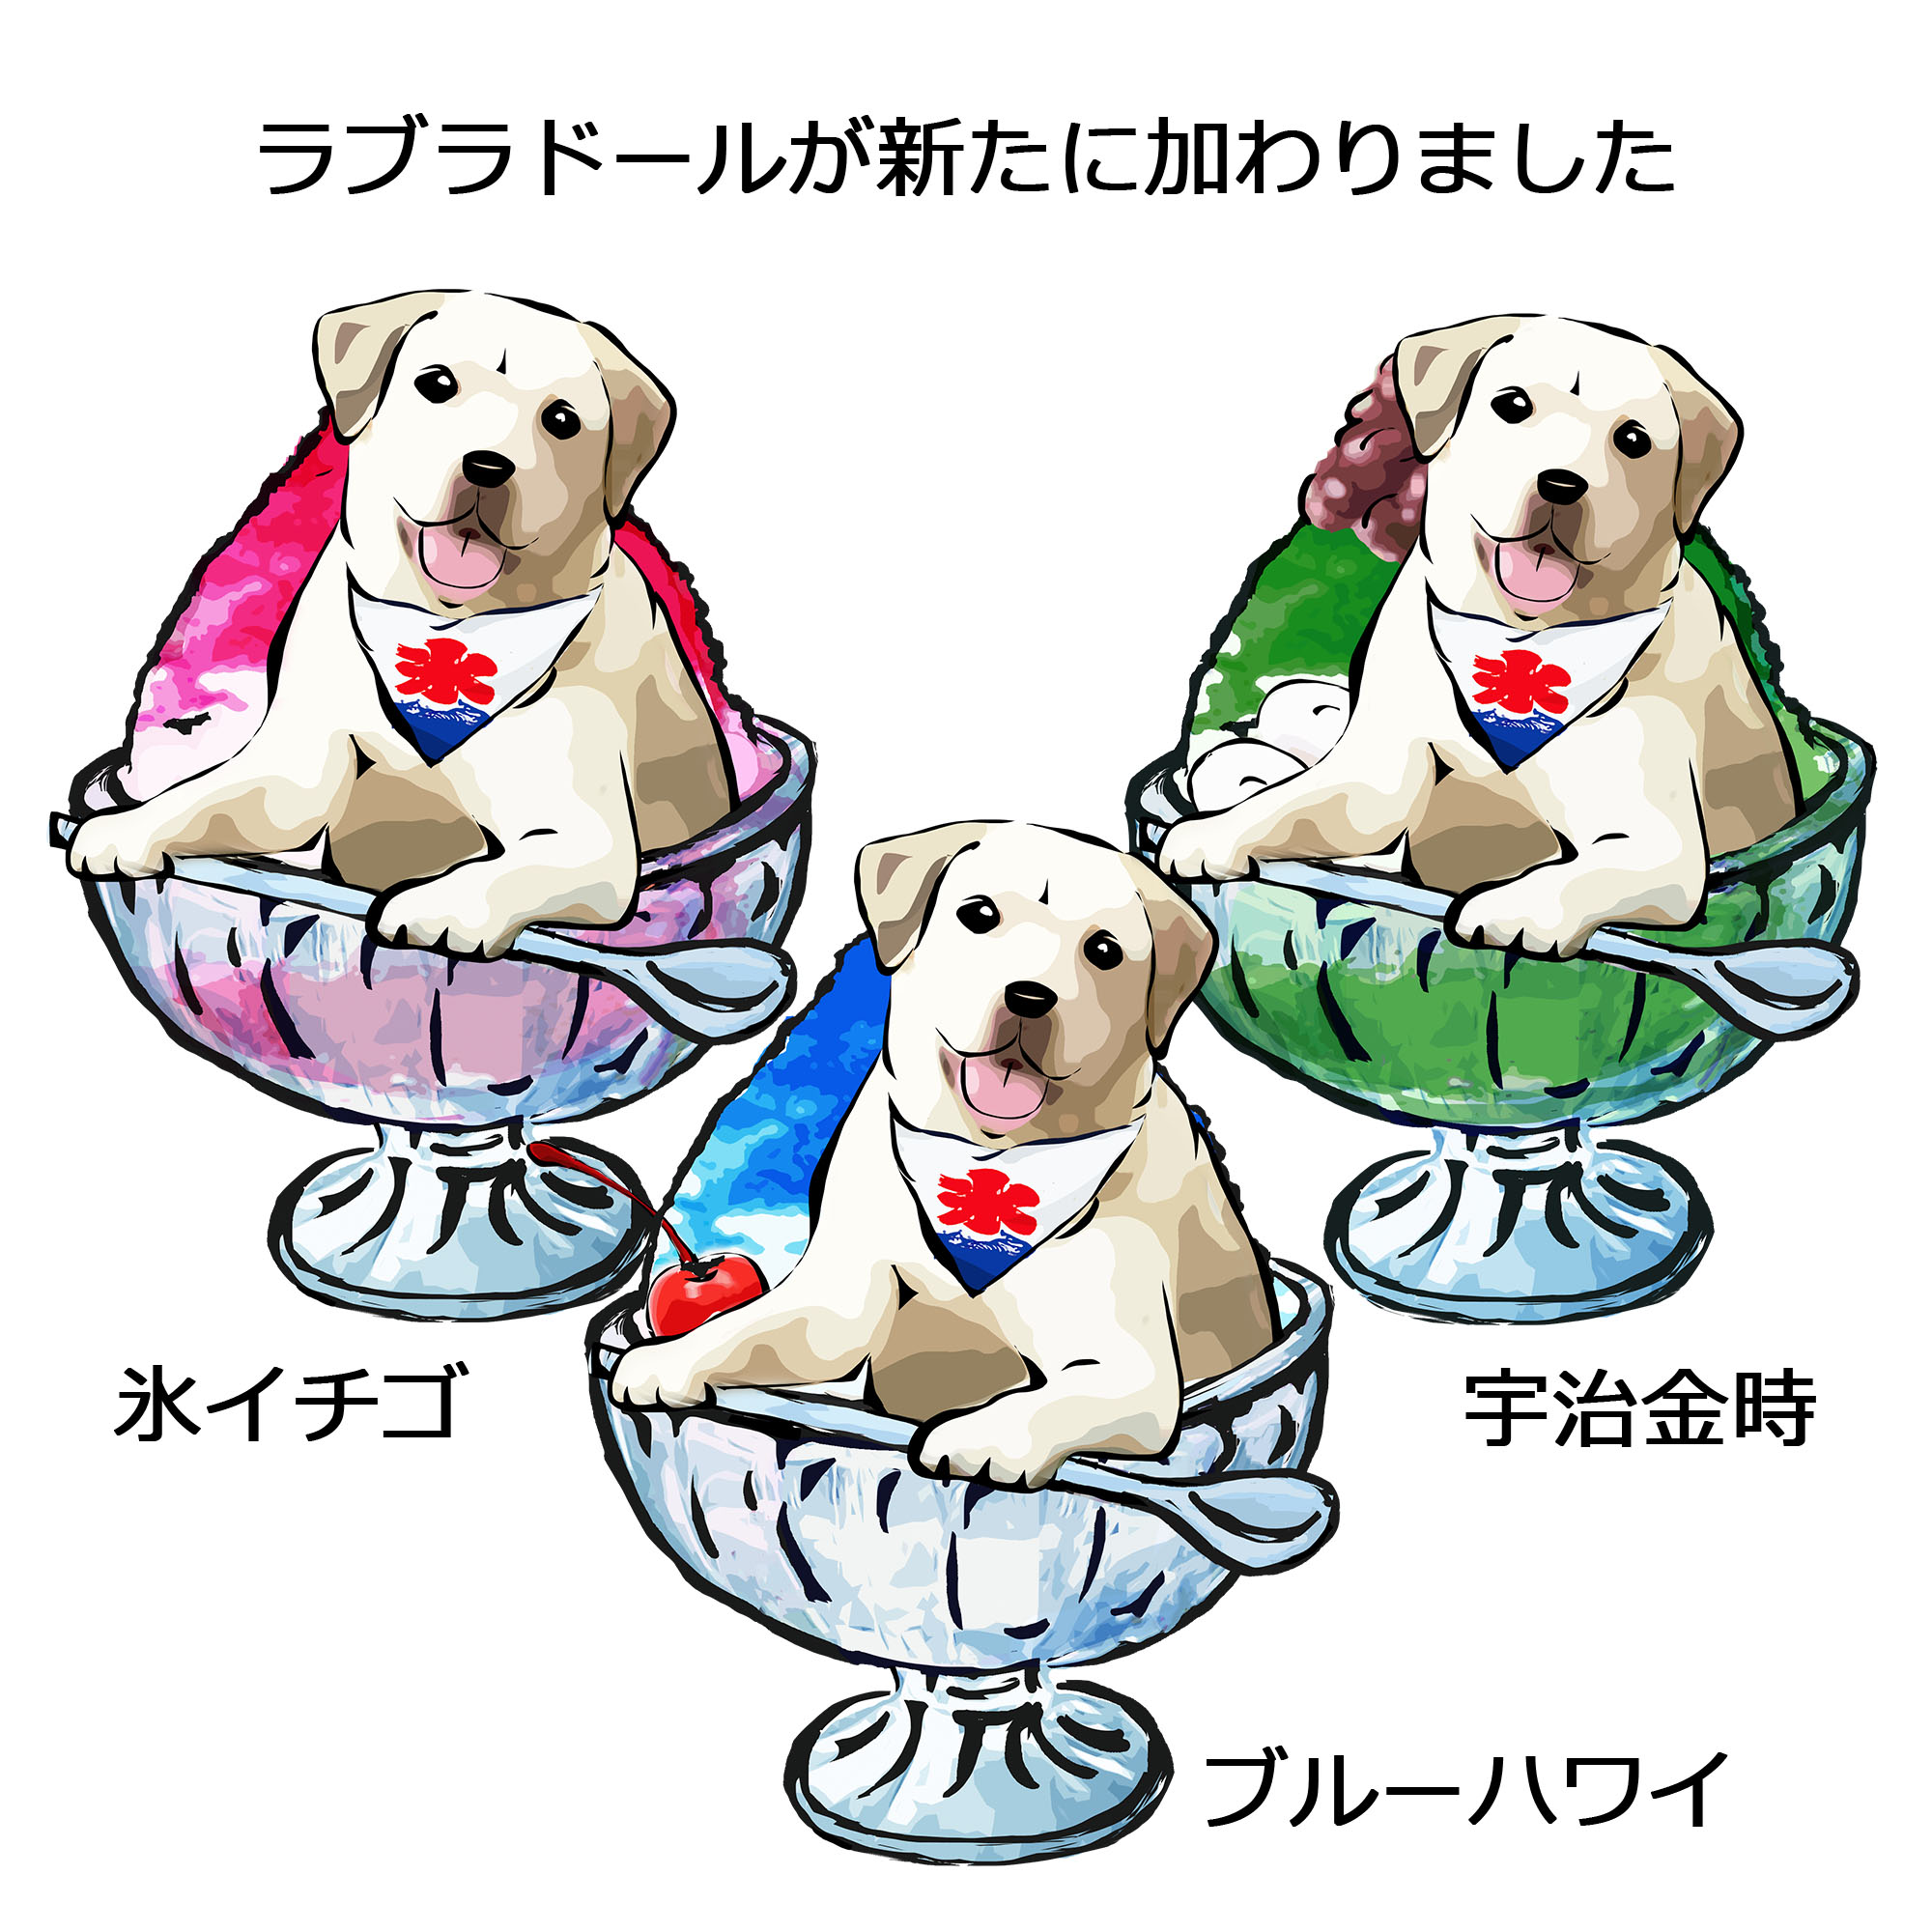 かき氷犬シリーズのTシャツ3種が新登場です